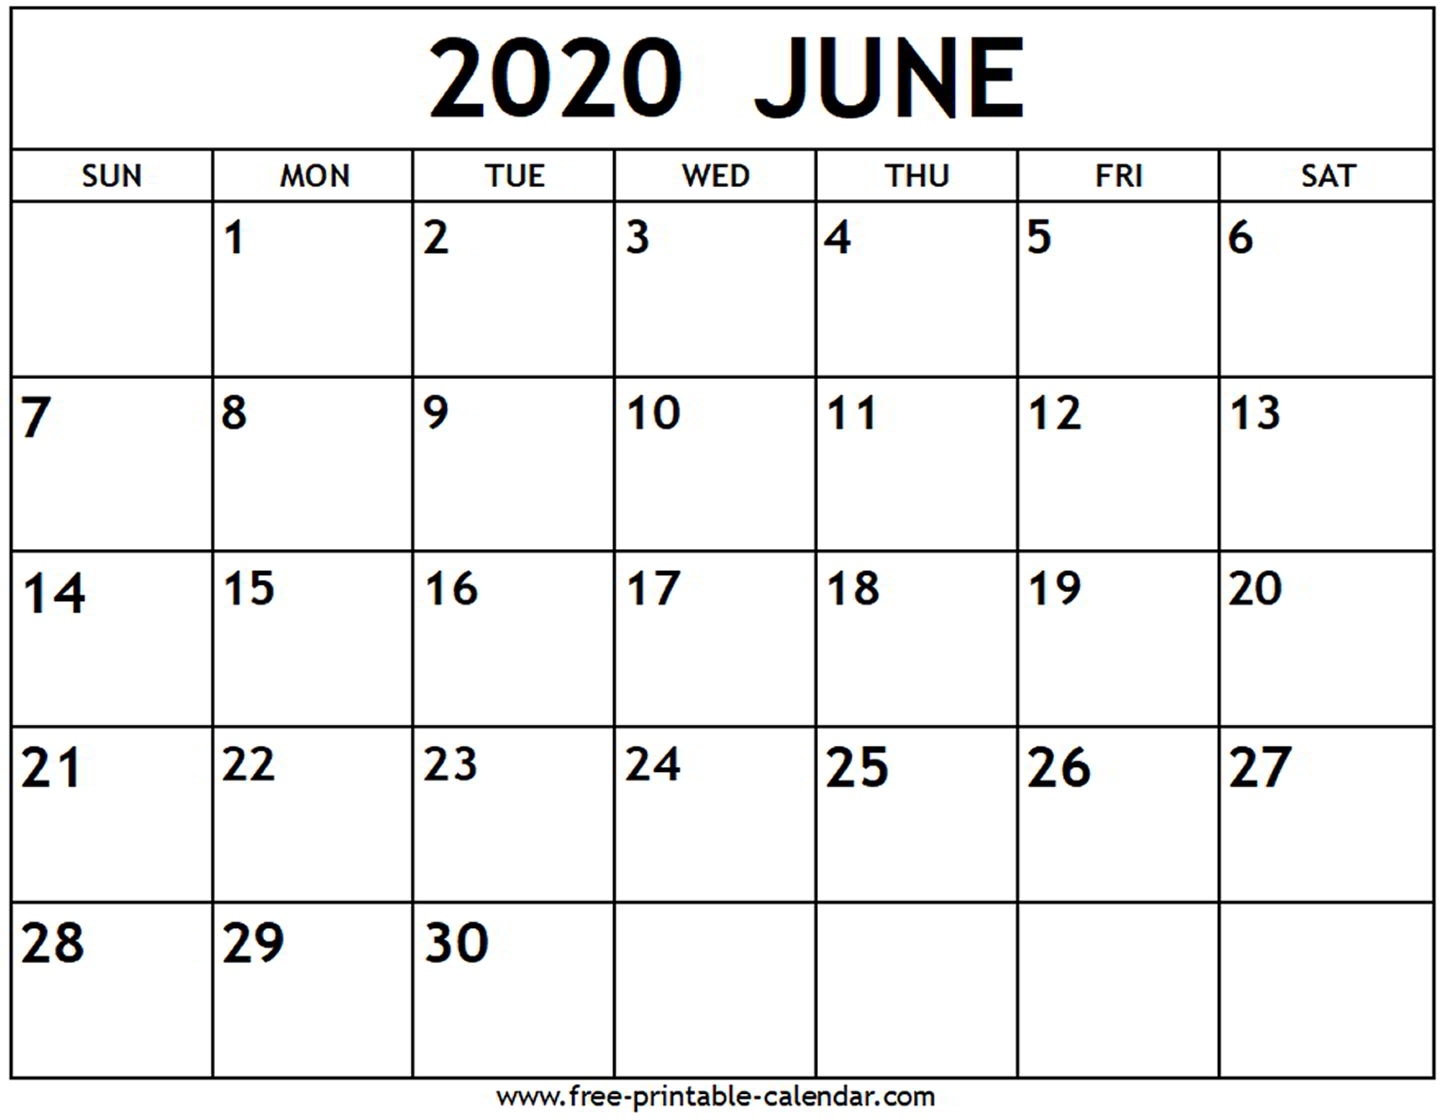 June 2020 Calendar - Free-Printable-Calendar Incredible June 2020 Calendar Canada